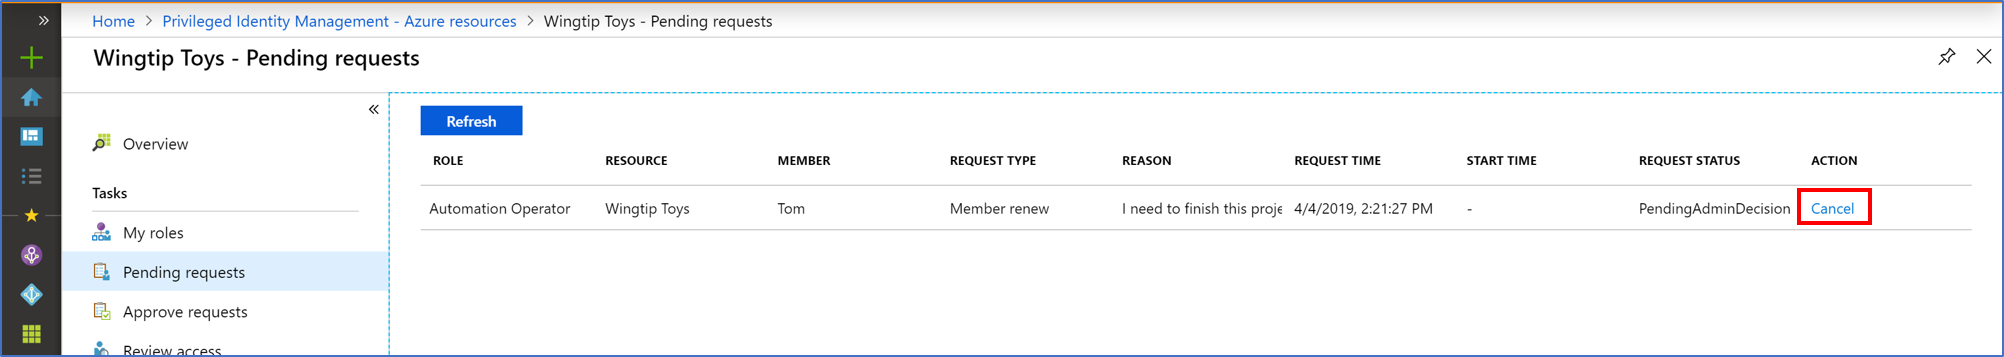 Recursos de Azure: página de solicitudes pendiente que muestra todas las solicitudes pendientes y un vínculo para cancelarlas